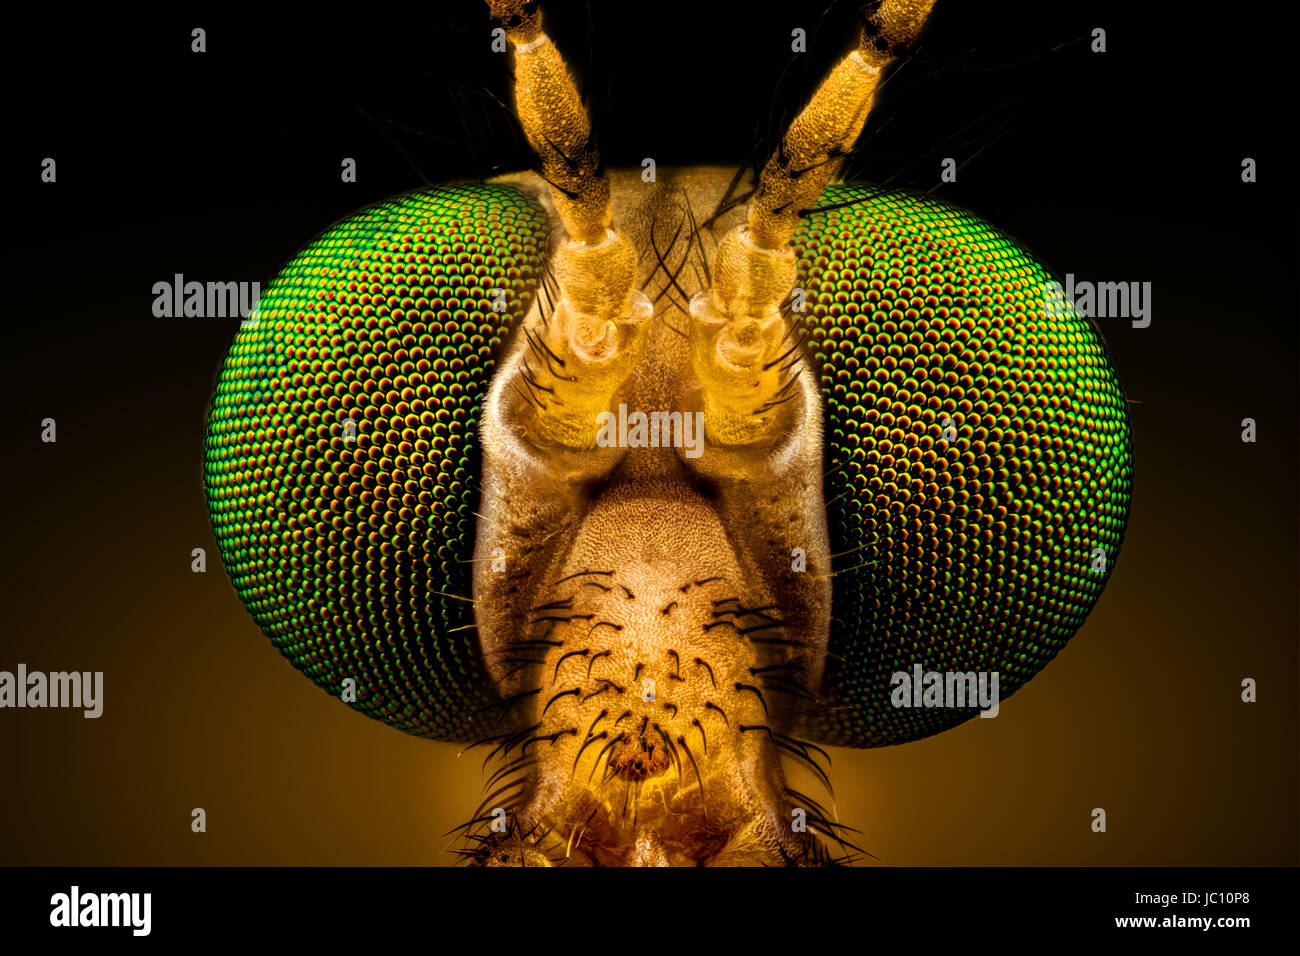 Macro extremo frontal completa - retrato de una grúa de ojos verdes volar, amplificado a través de un microscopio objetivo (anchura del bastidor es de 2,2mm) Foto de stock